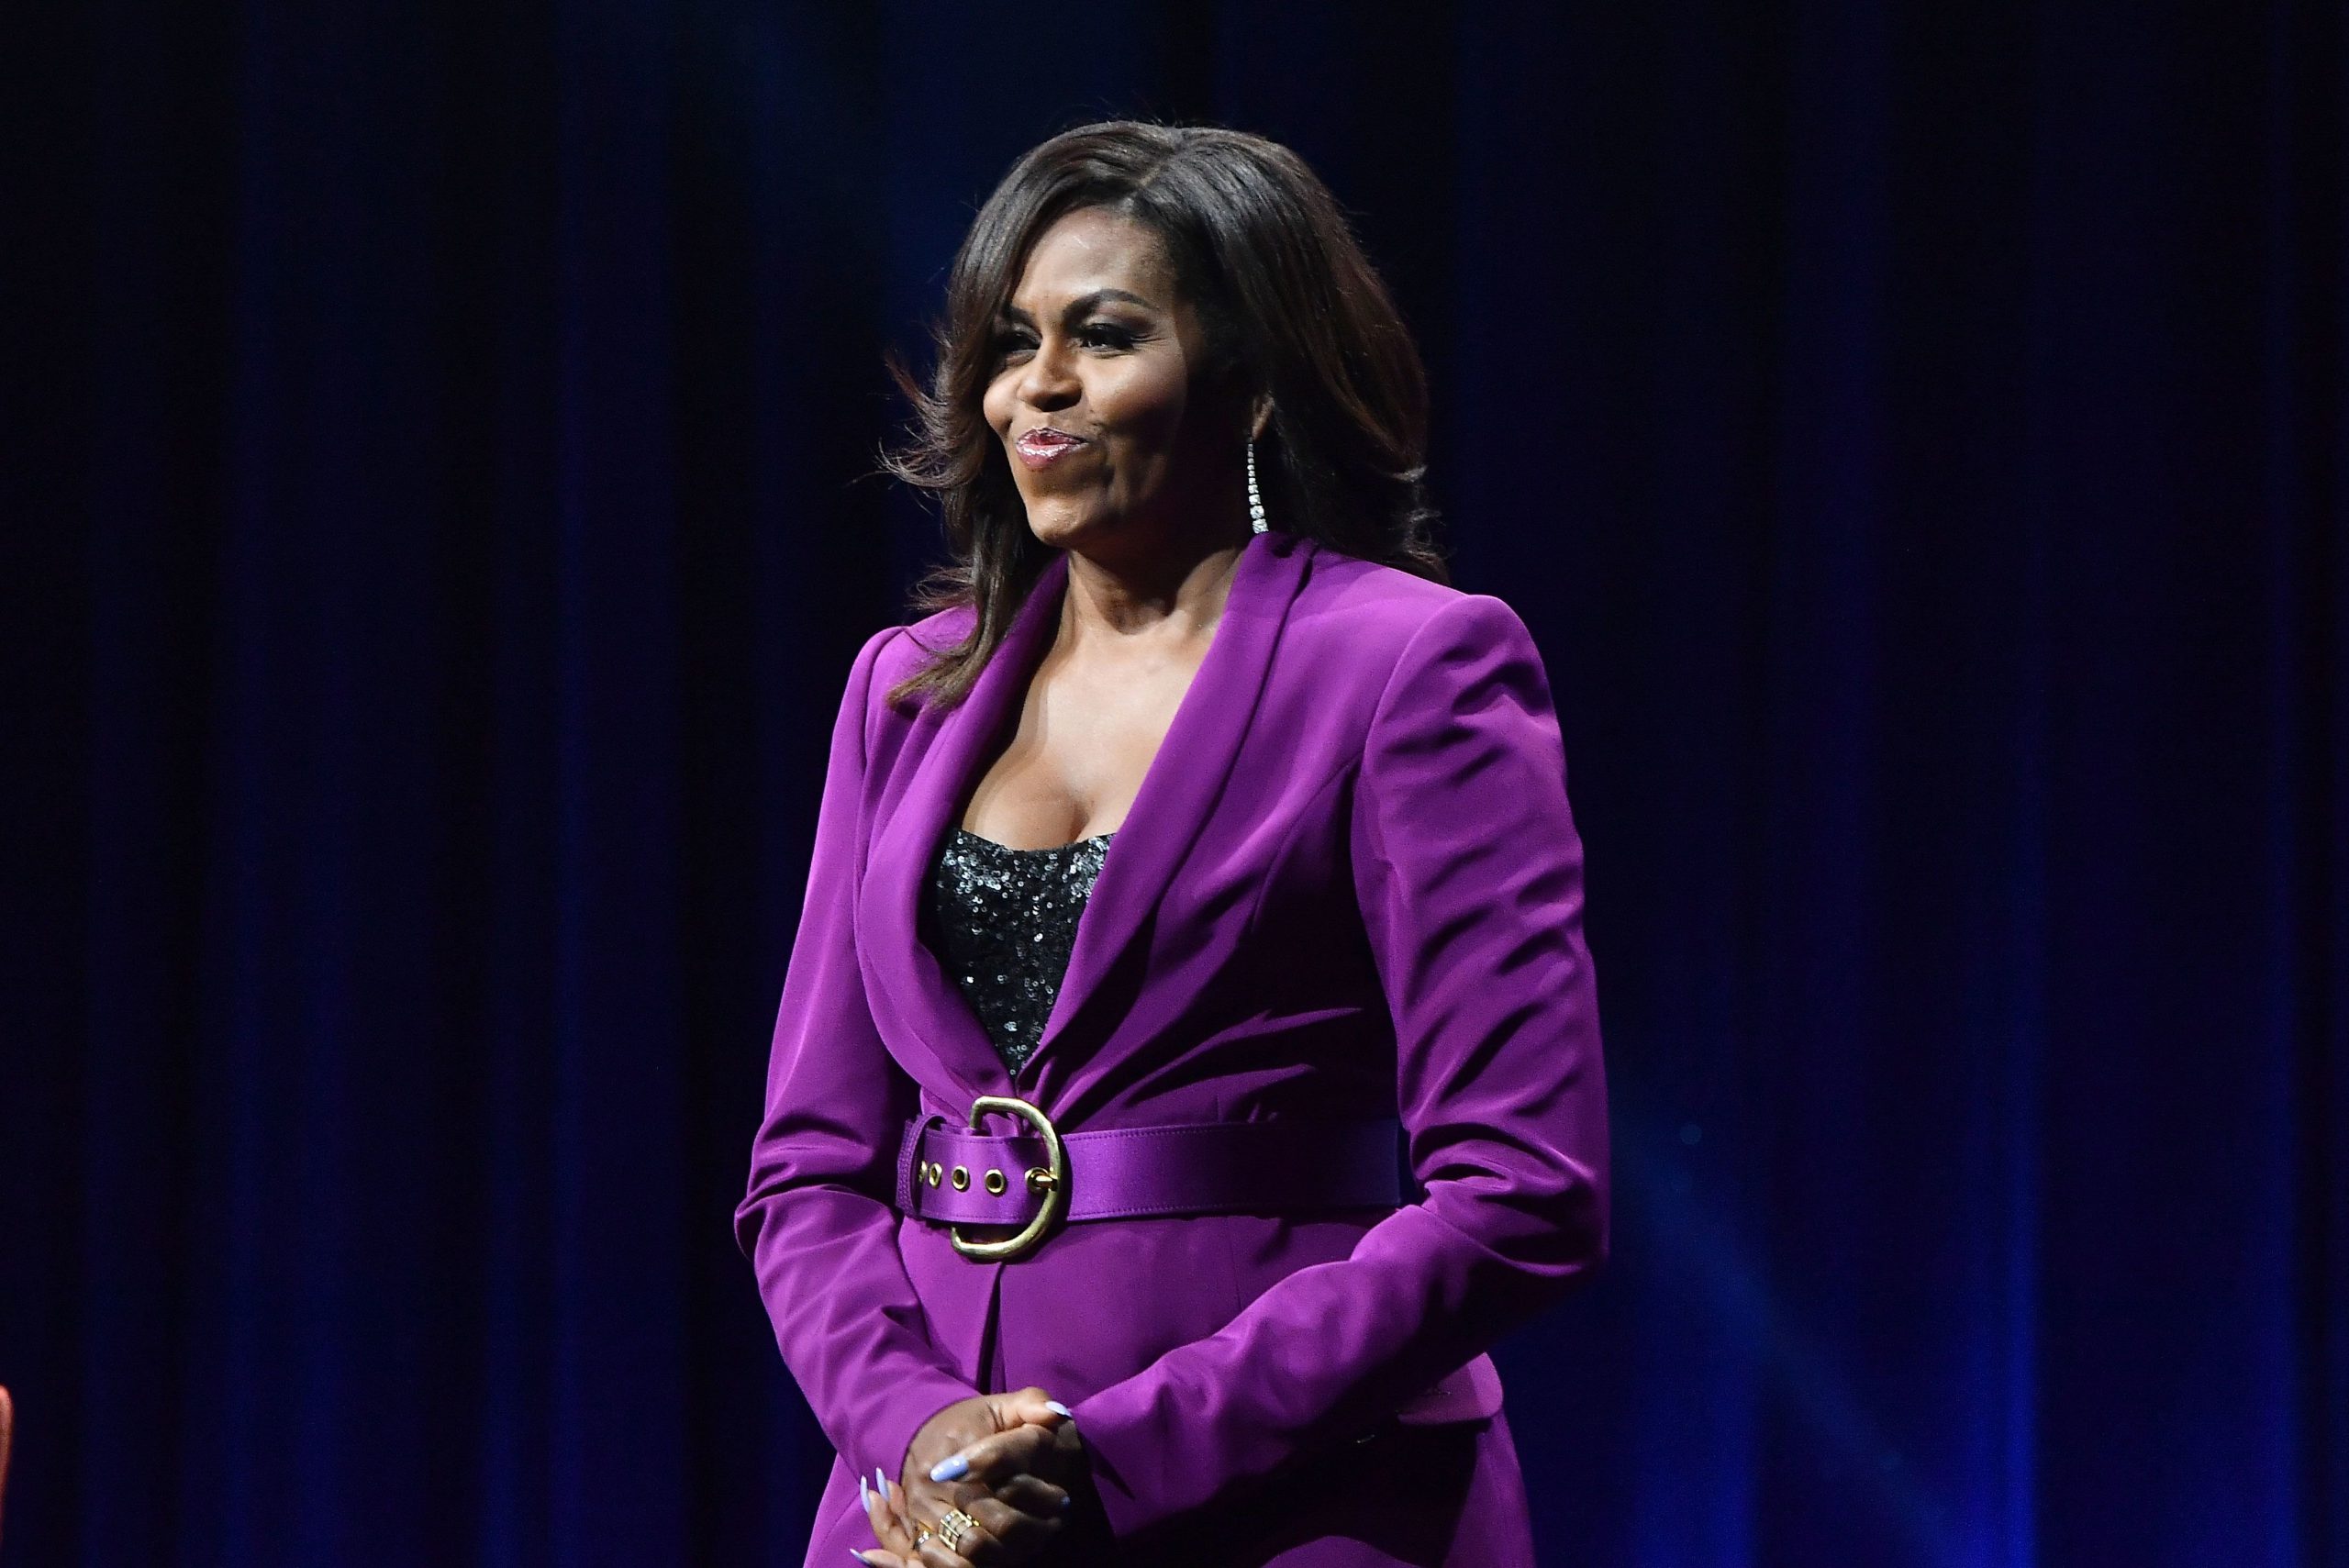  Michelle Obama mărturiseşte că nu şi-a putut suporta soţul, pe Barack Obama, timp de zece ani